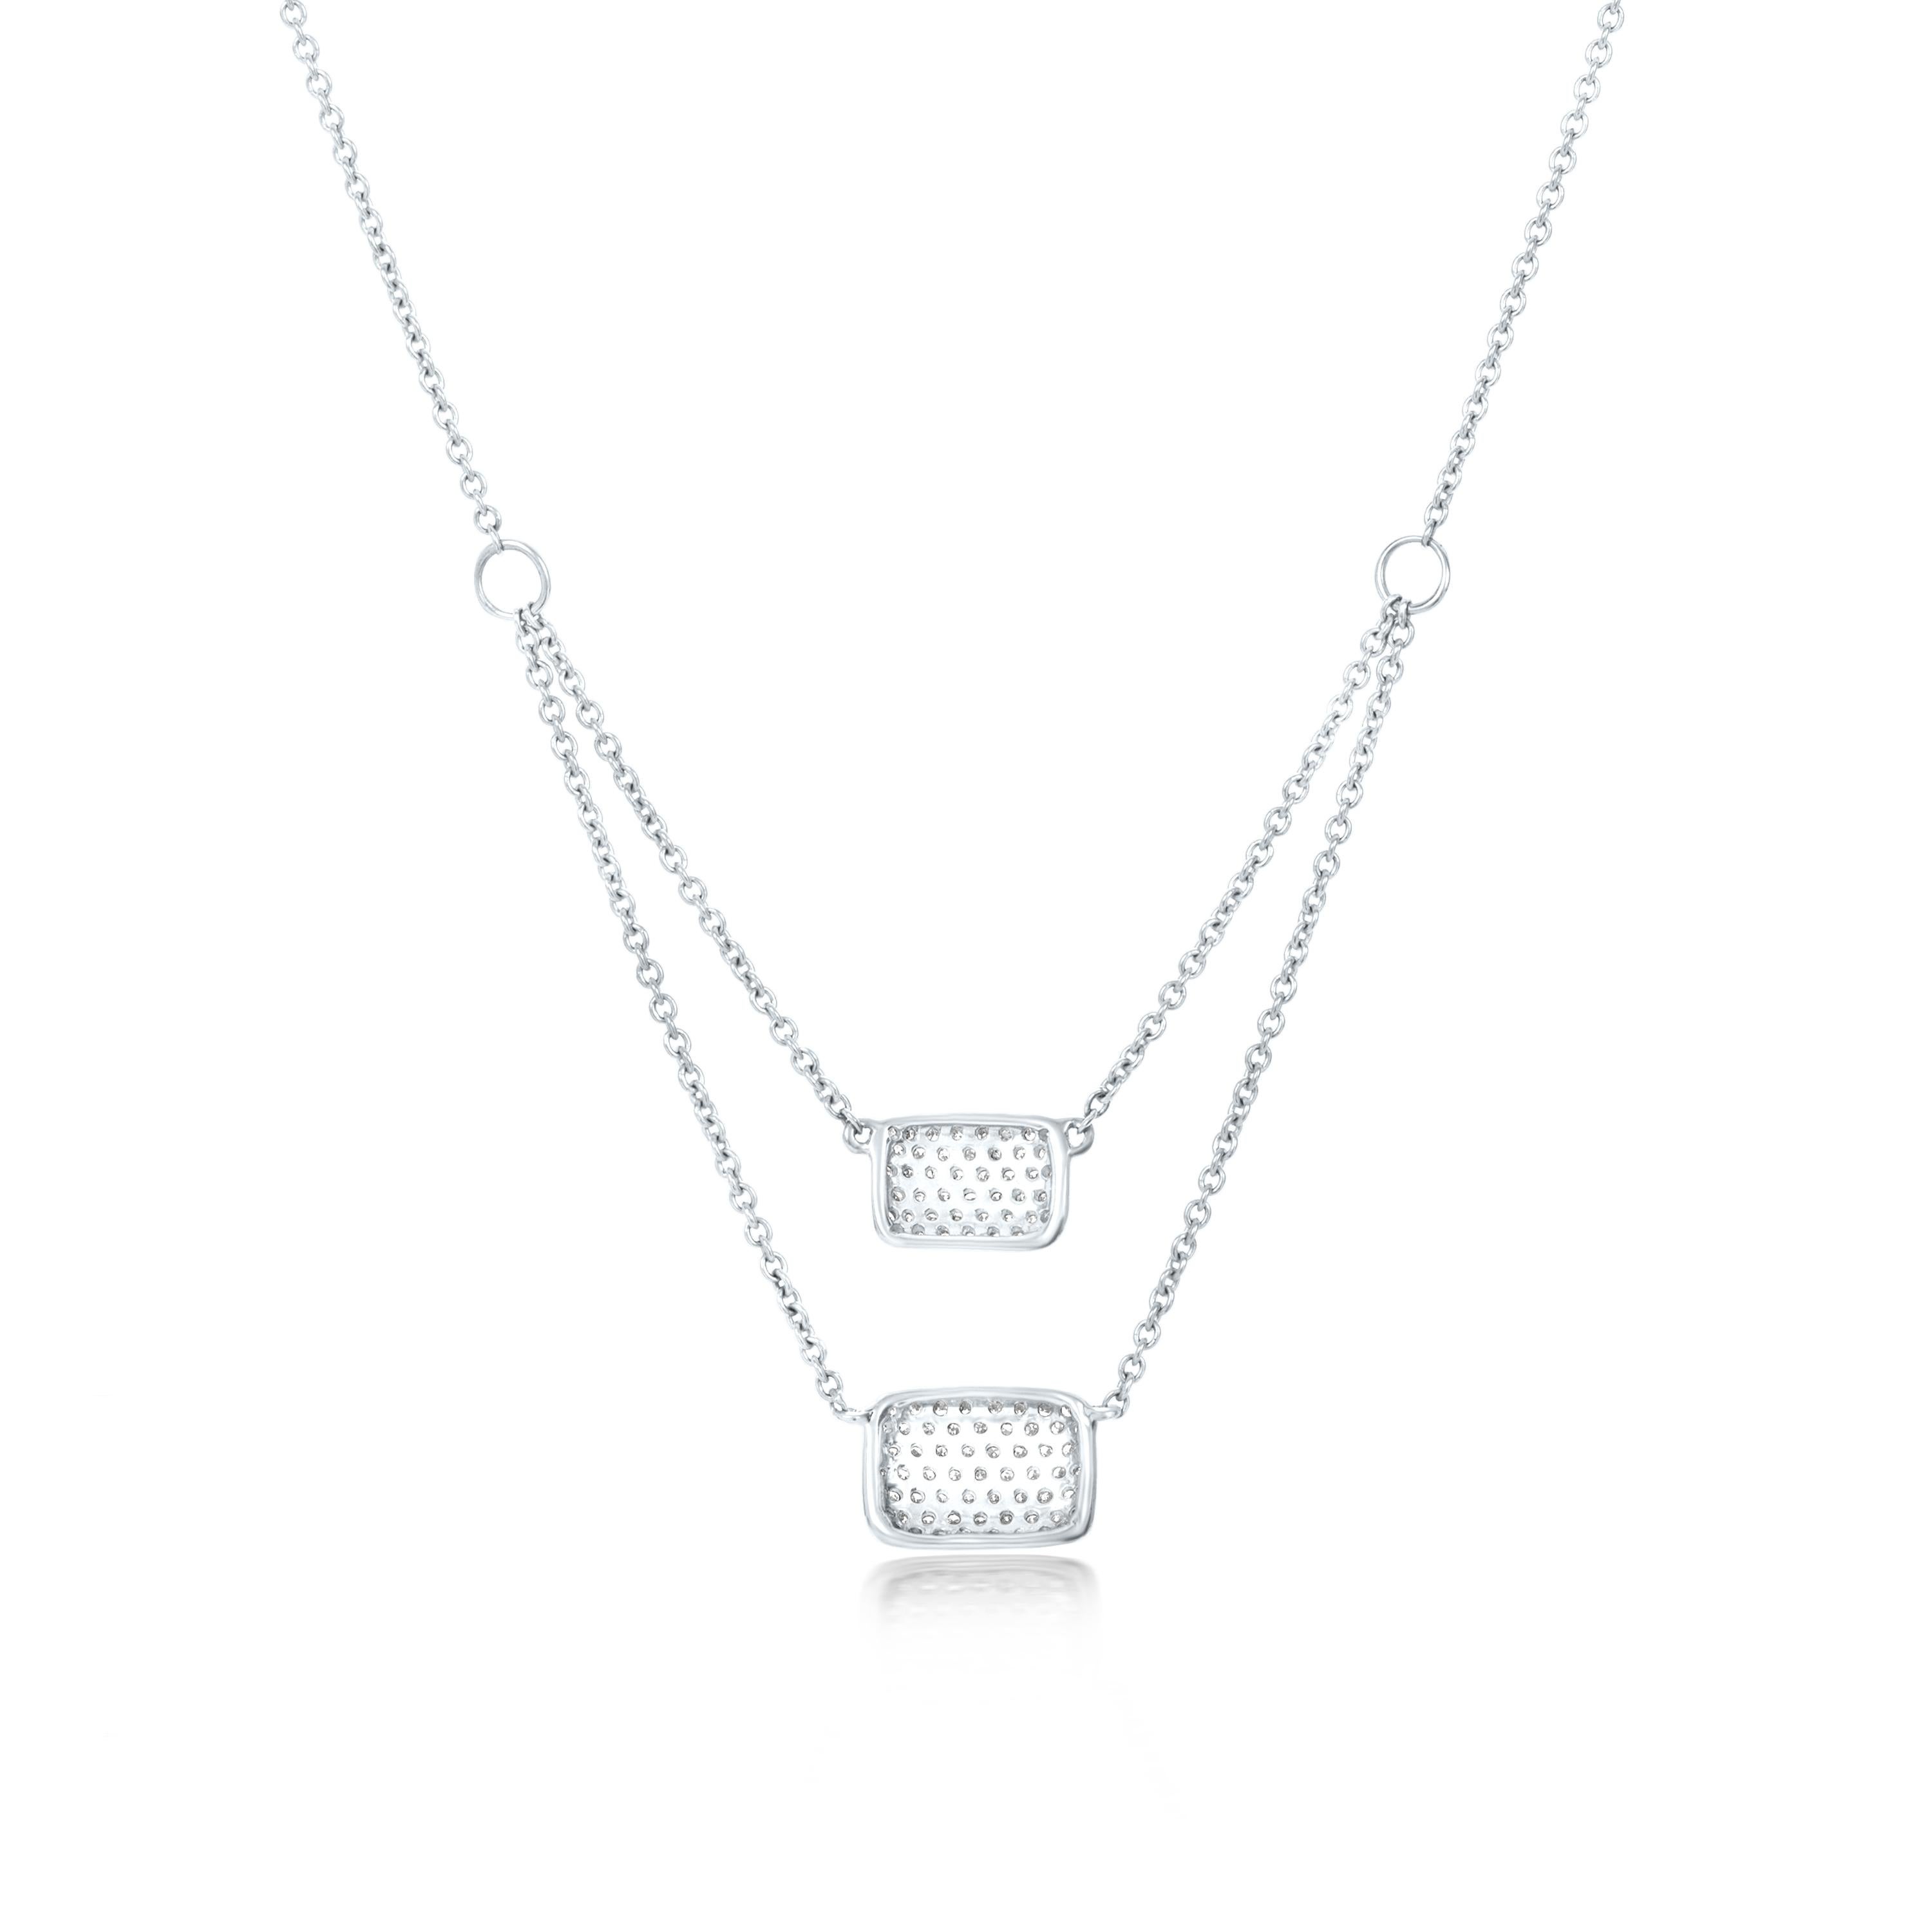 Diese doppelreihige, quadratische Clusterkette von Luxle ist ein Unikat, das sorgfältig aus 14 Karat Weißgold gefertigt wurde. Diese Halskette besteht aus 0,29 Karat runden, einzeln geschliffenen Diamanten, die perfekt ausgerichtet sind, um das